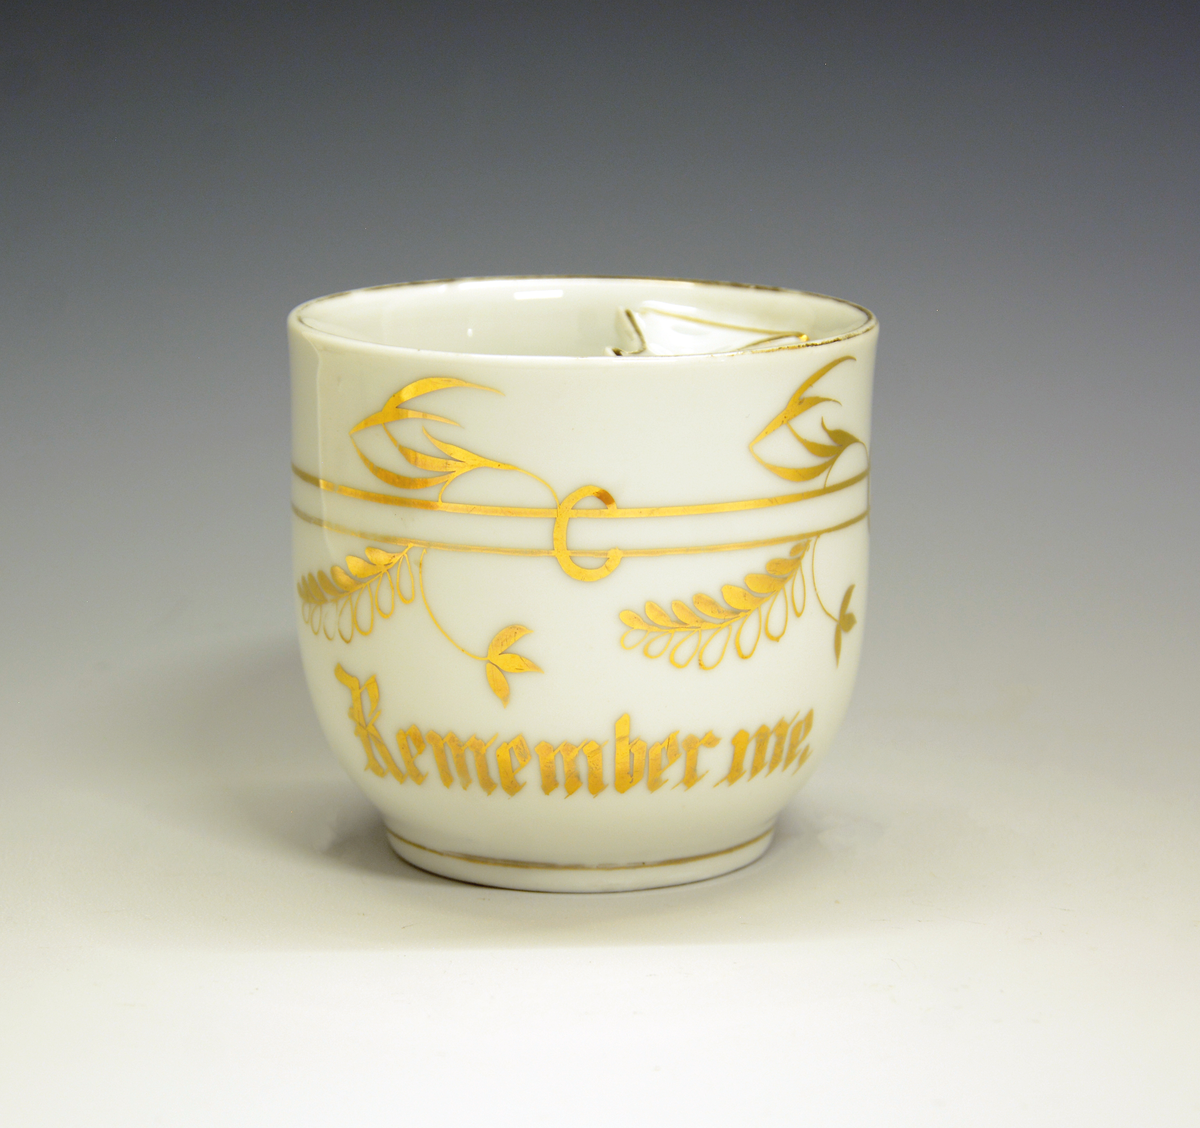 Bartekopp av porselen, hvit med gulldekor. Inskripsjon i gull: "Remember me".